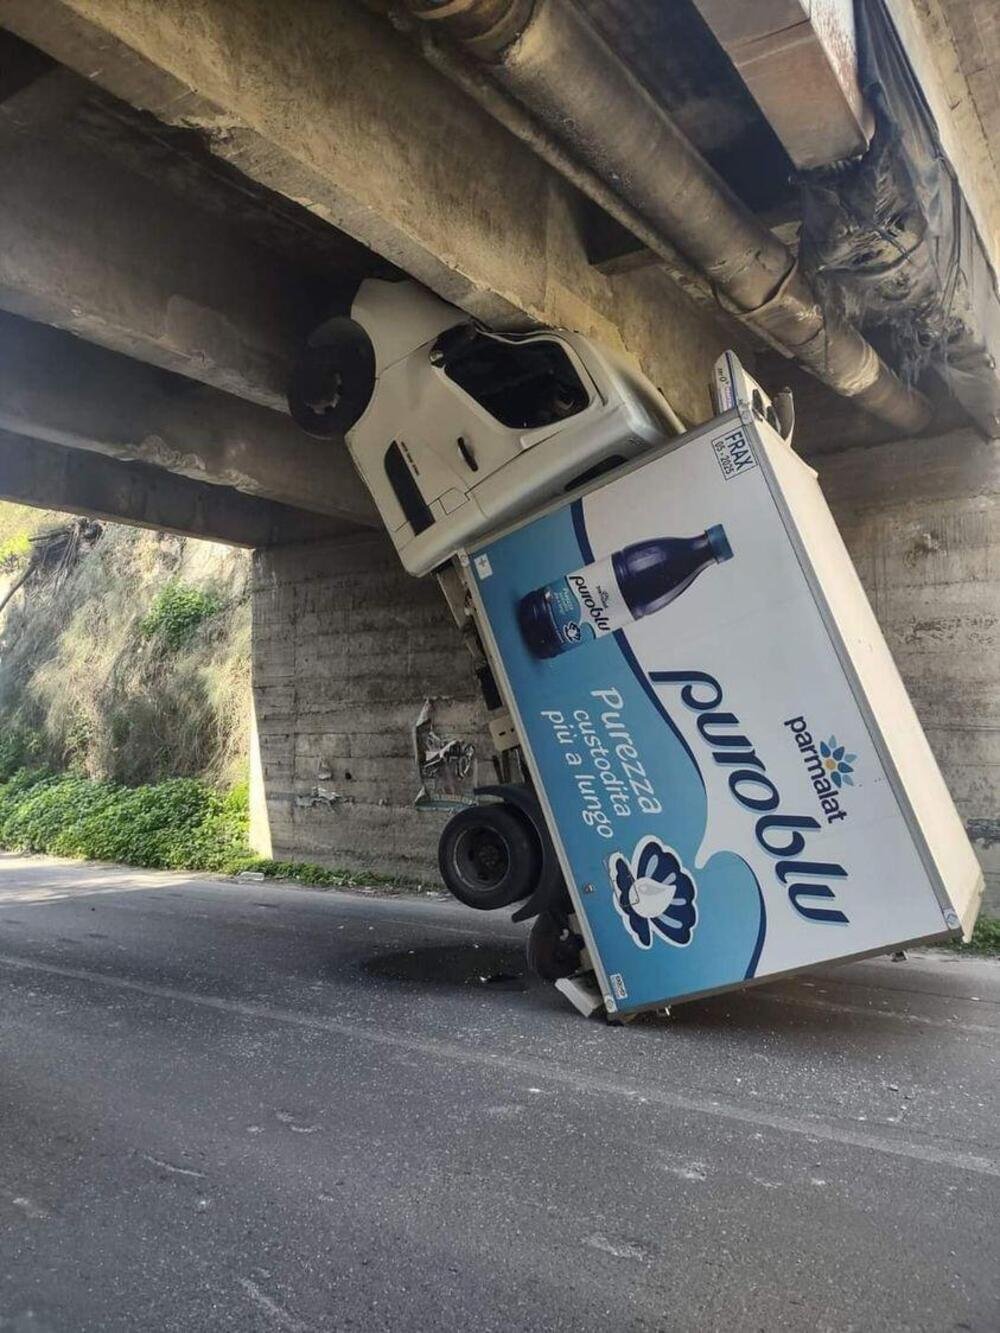 Il furgone incastrato sotto al ponte: tutte le ipotesi possibili